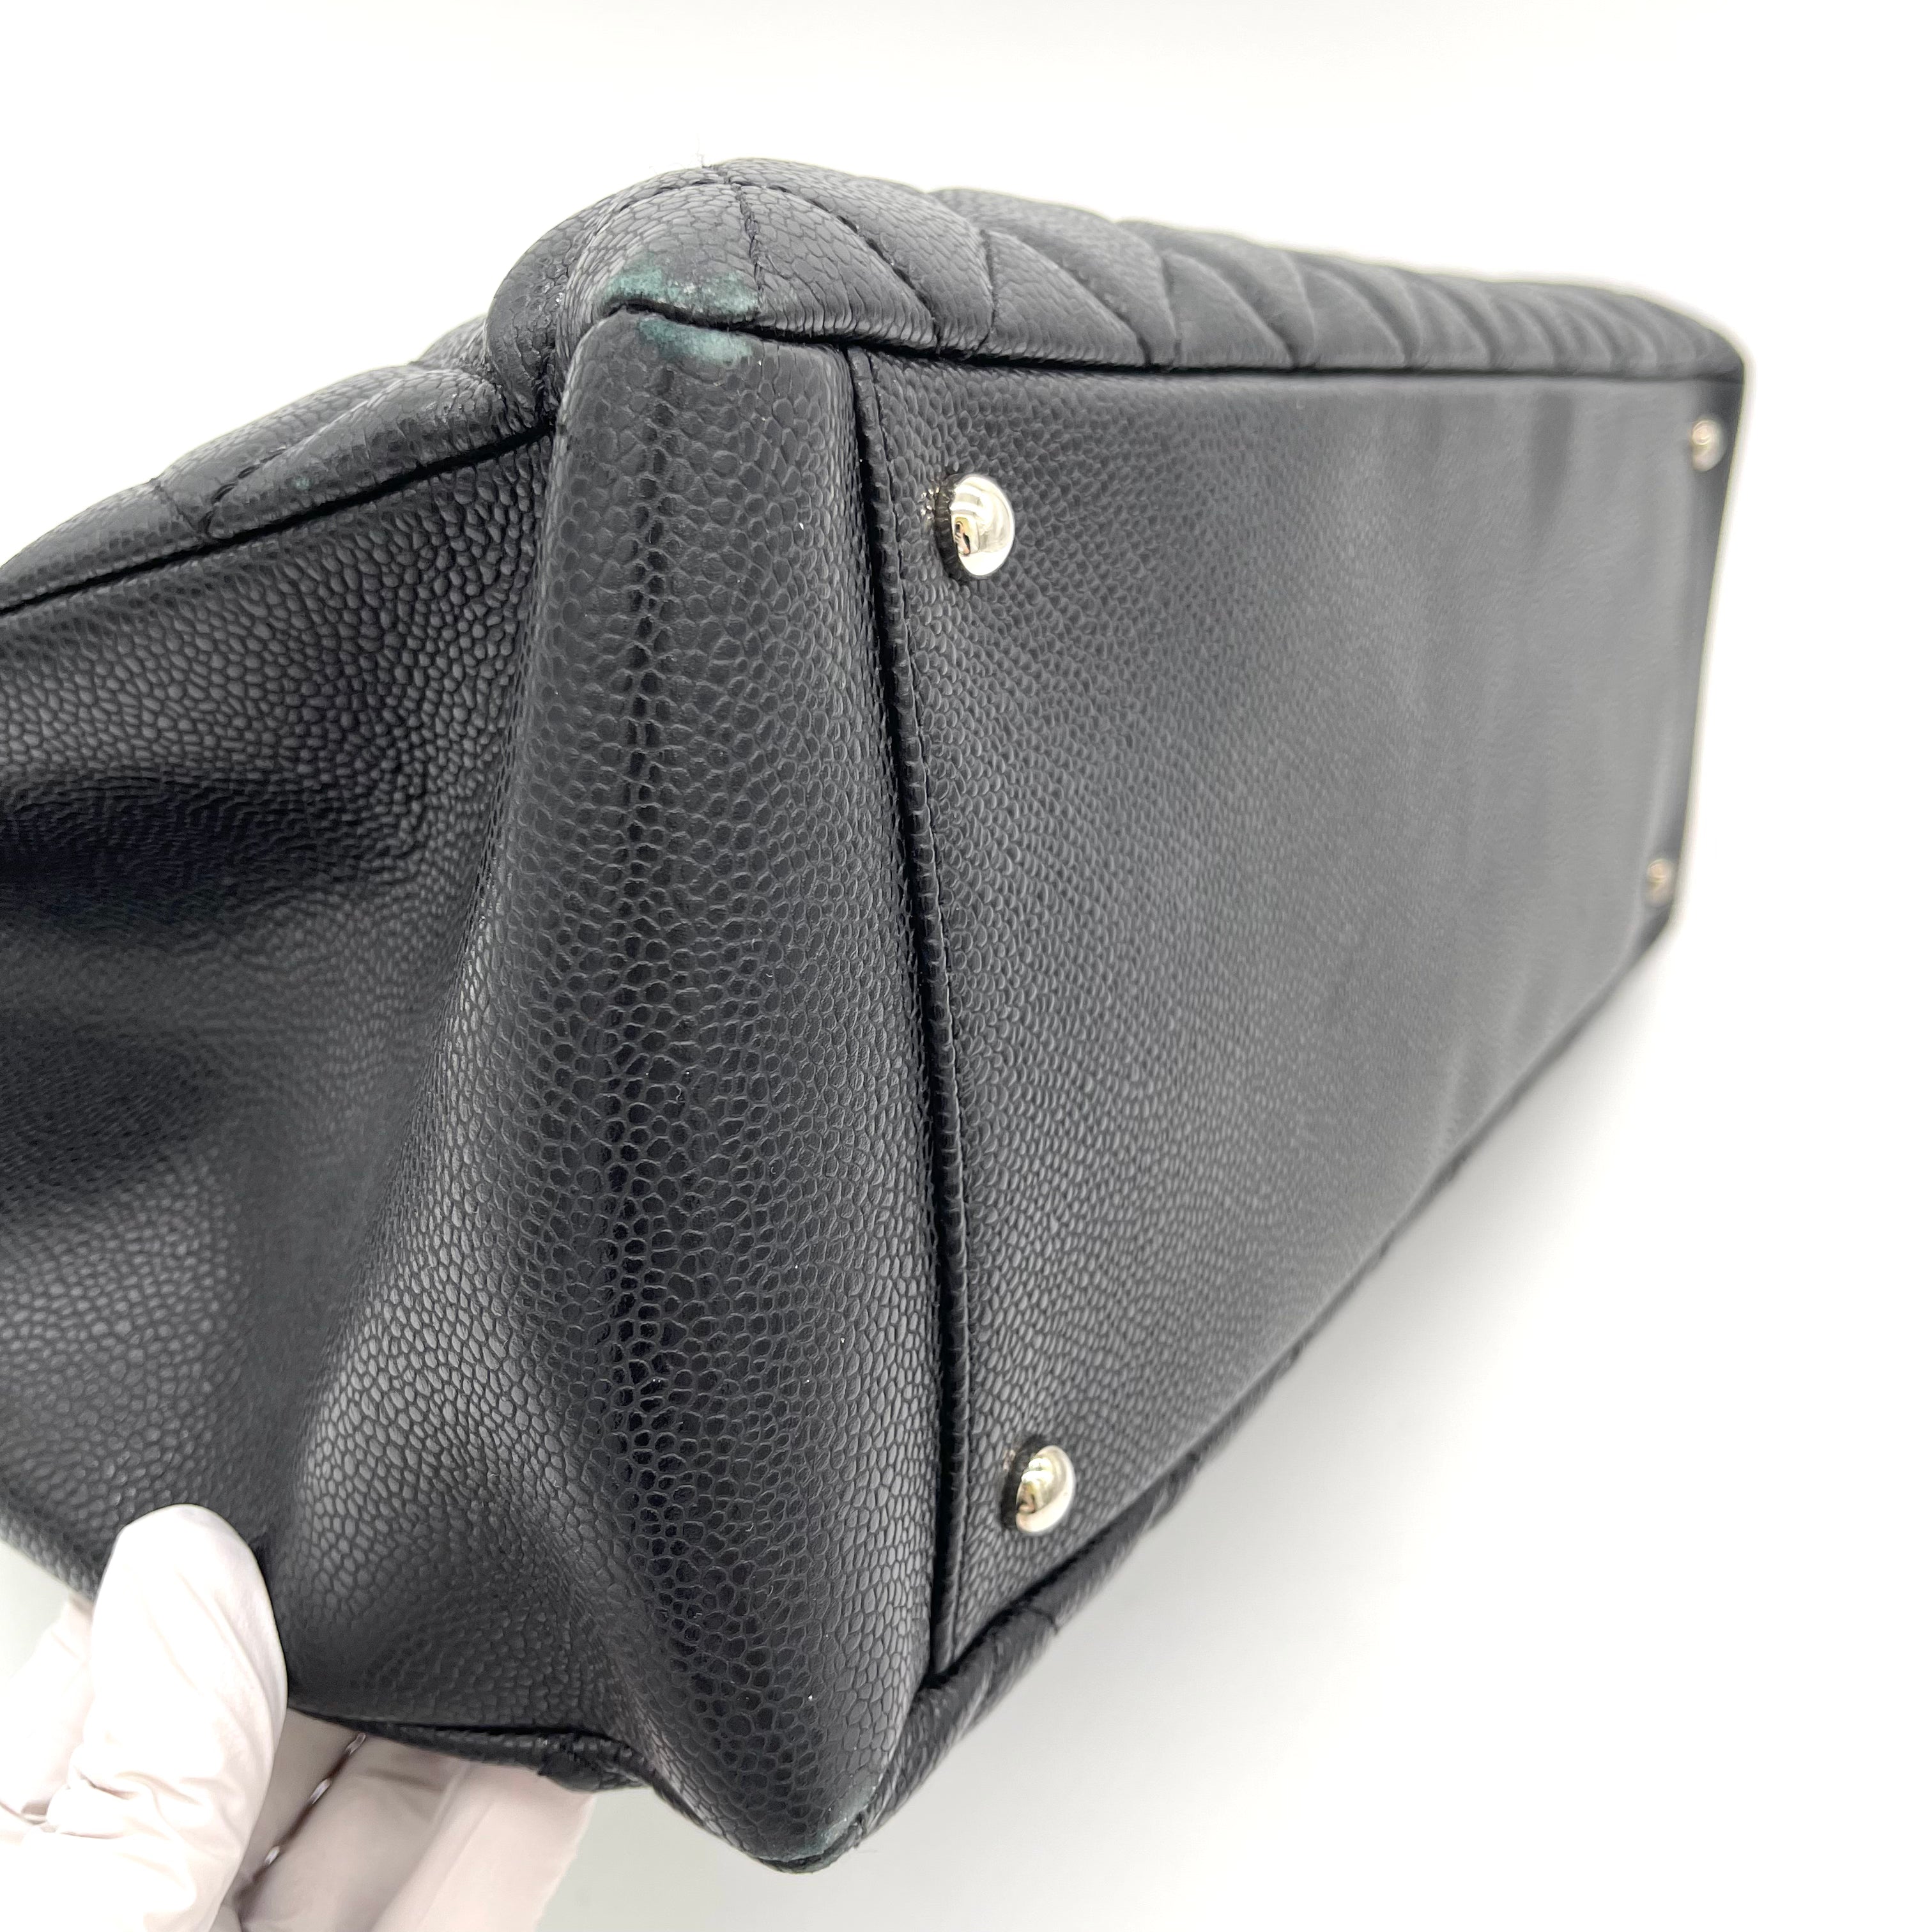 chanel quilted leather shoulder bag